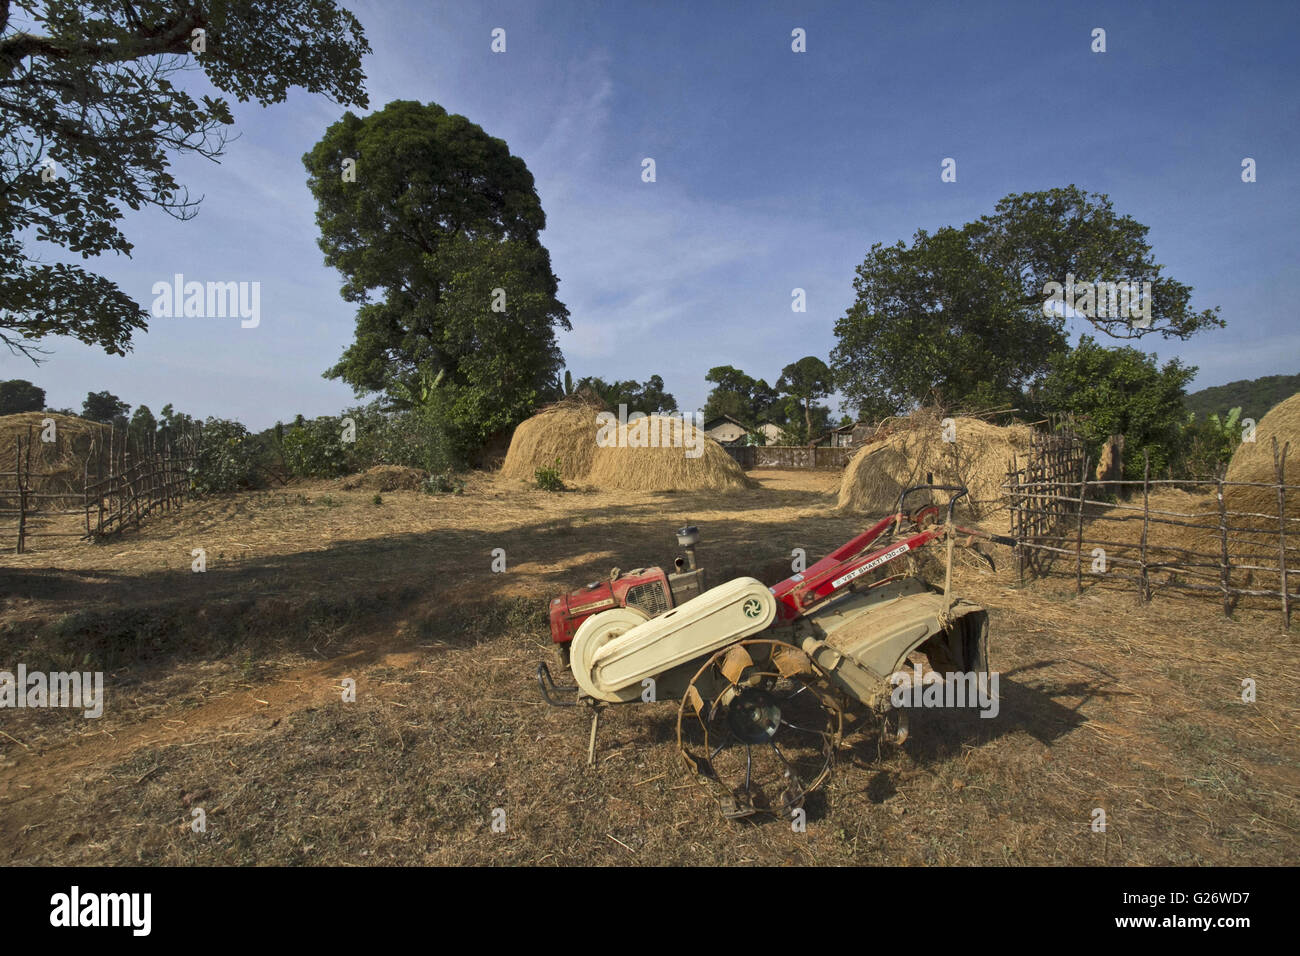 Azionato a mano il trattore a Kuveshi villaggio dello stato indiano del Karnataka Foto Stock